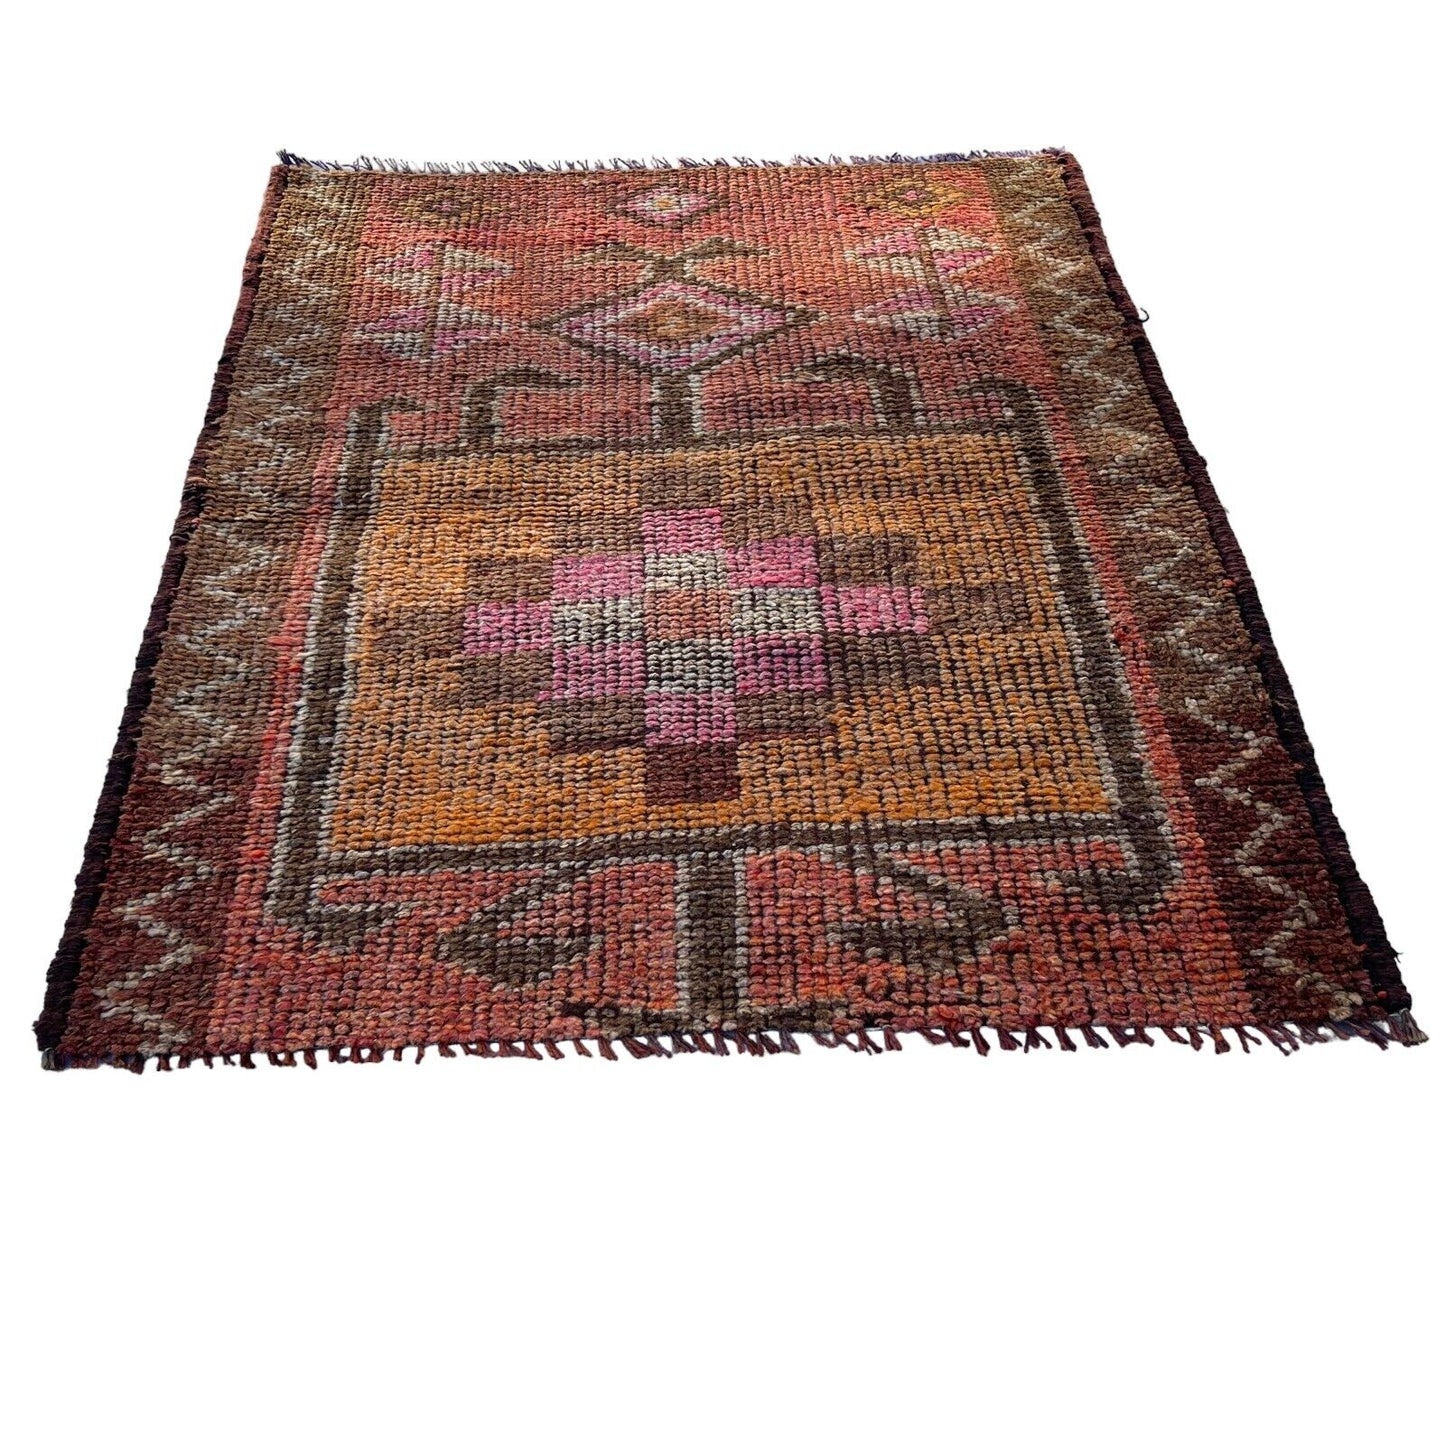 Traditional Turkish Kilim Rug,Vintage Kelim Teppich 110x95 Cm